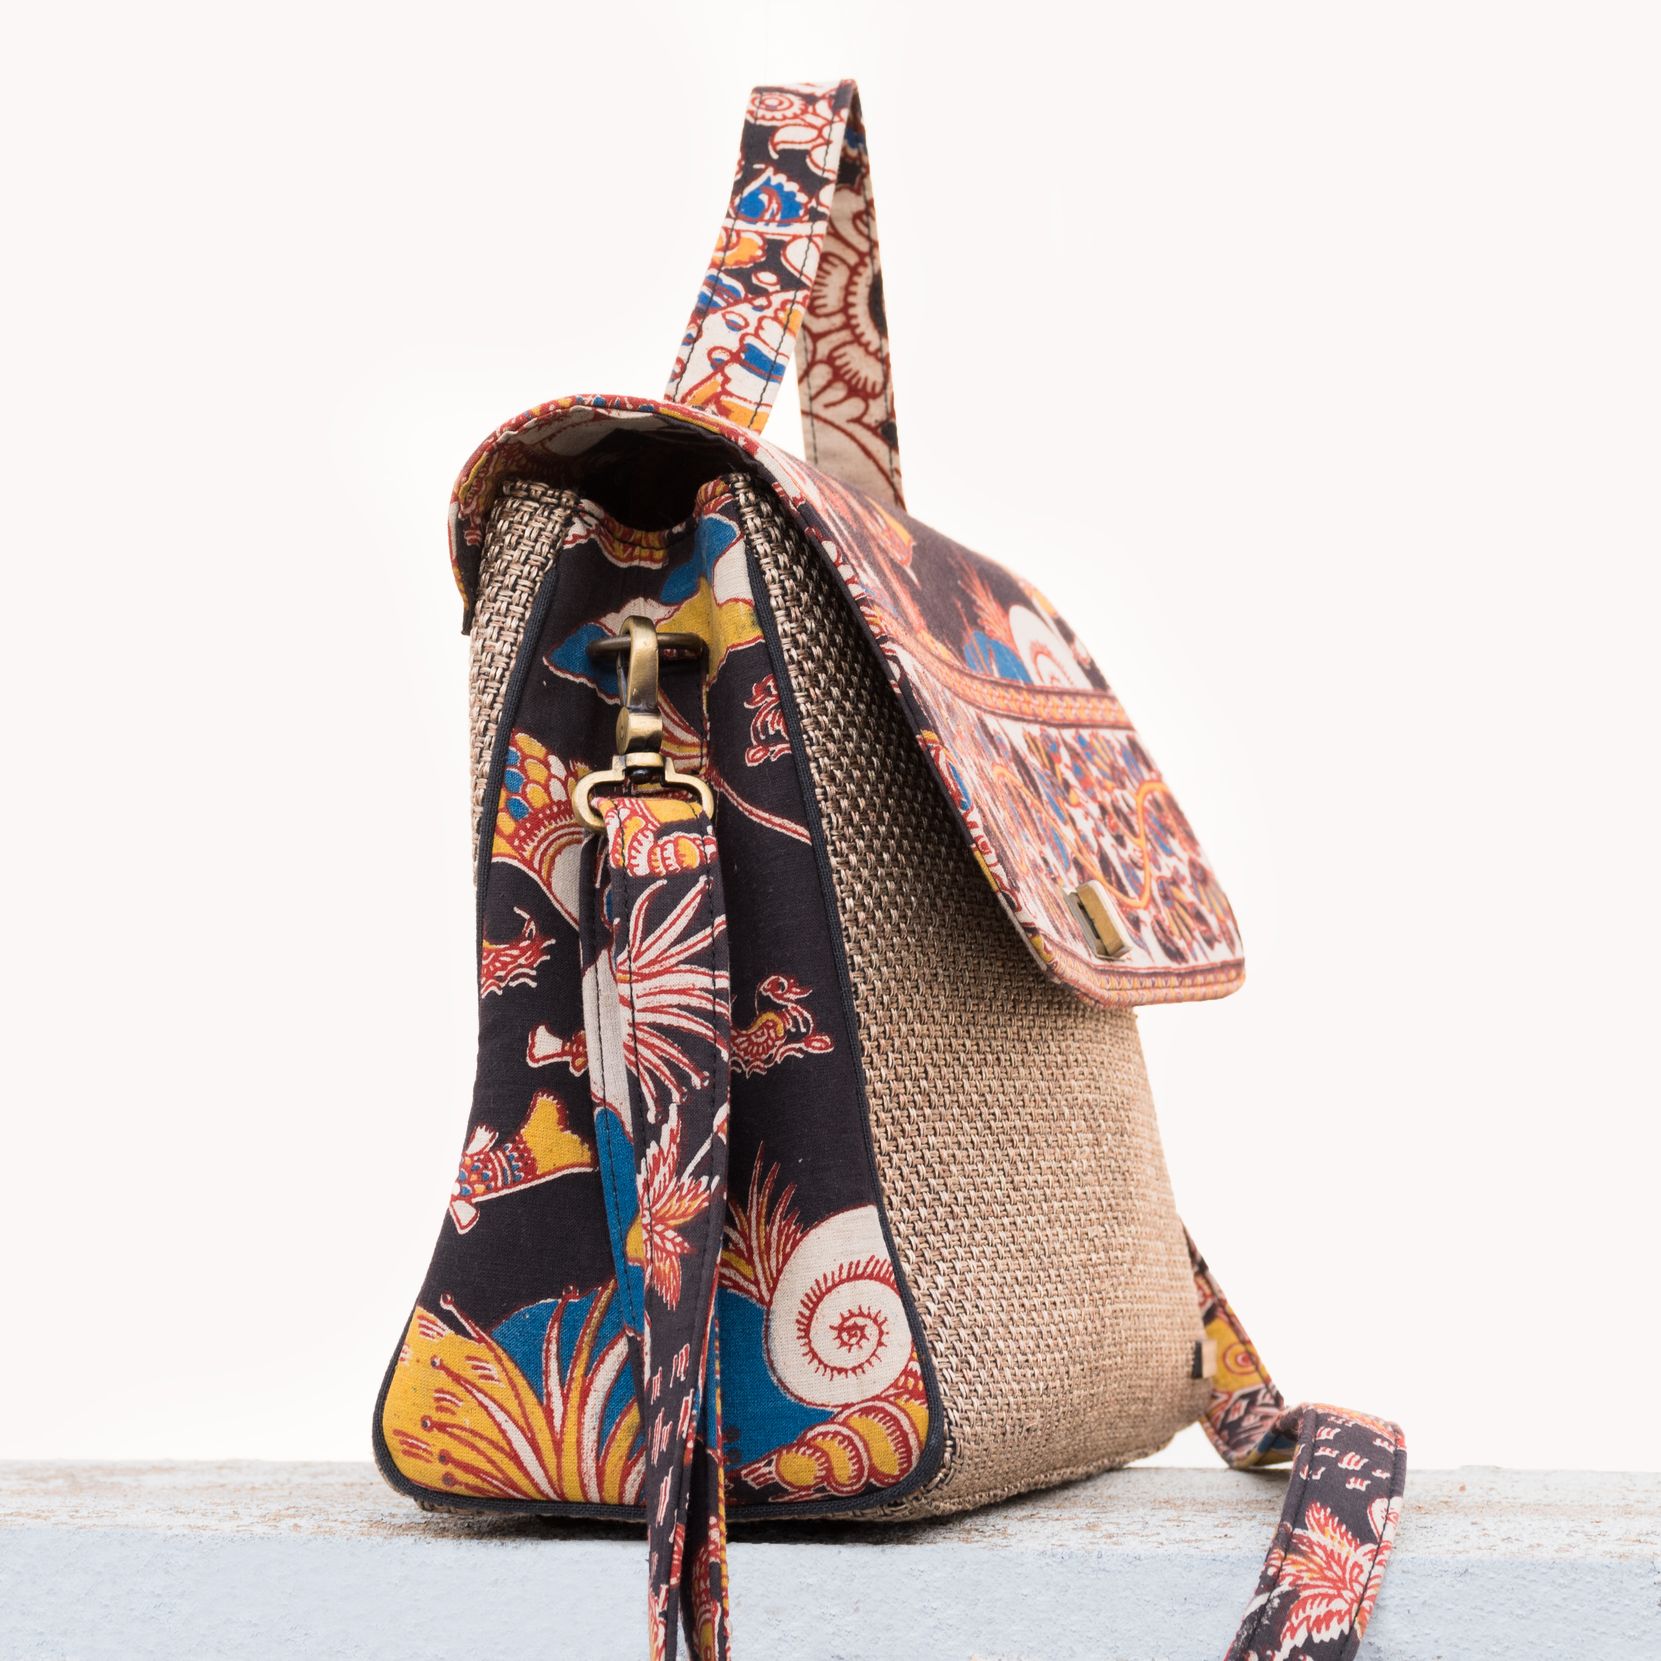 Buy Royal Fabric Bags Jute Kalamkari Design Grocery Handbag For  Multipurpose Use, Unisex at Amazon.in